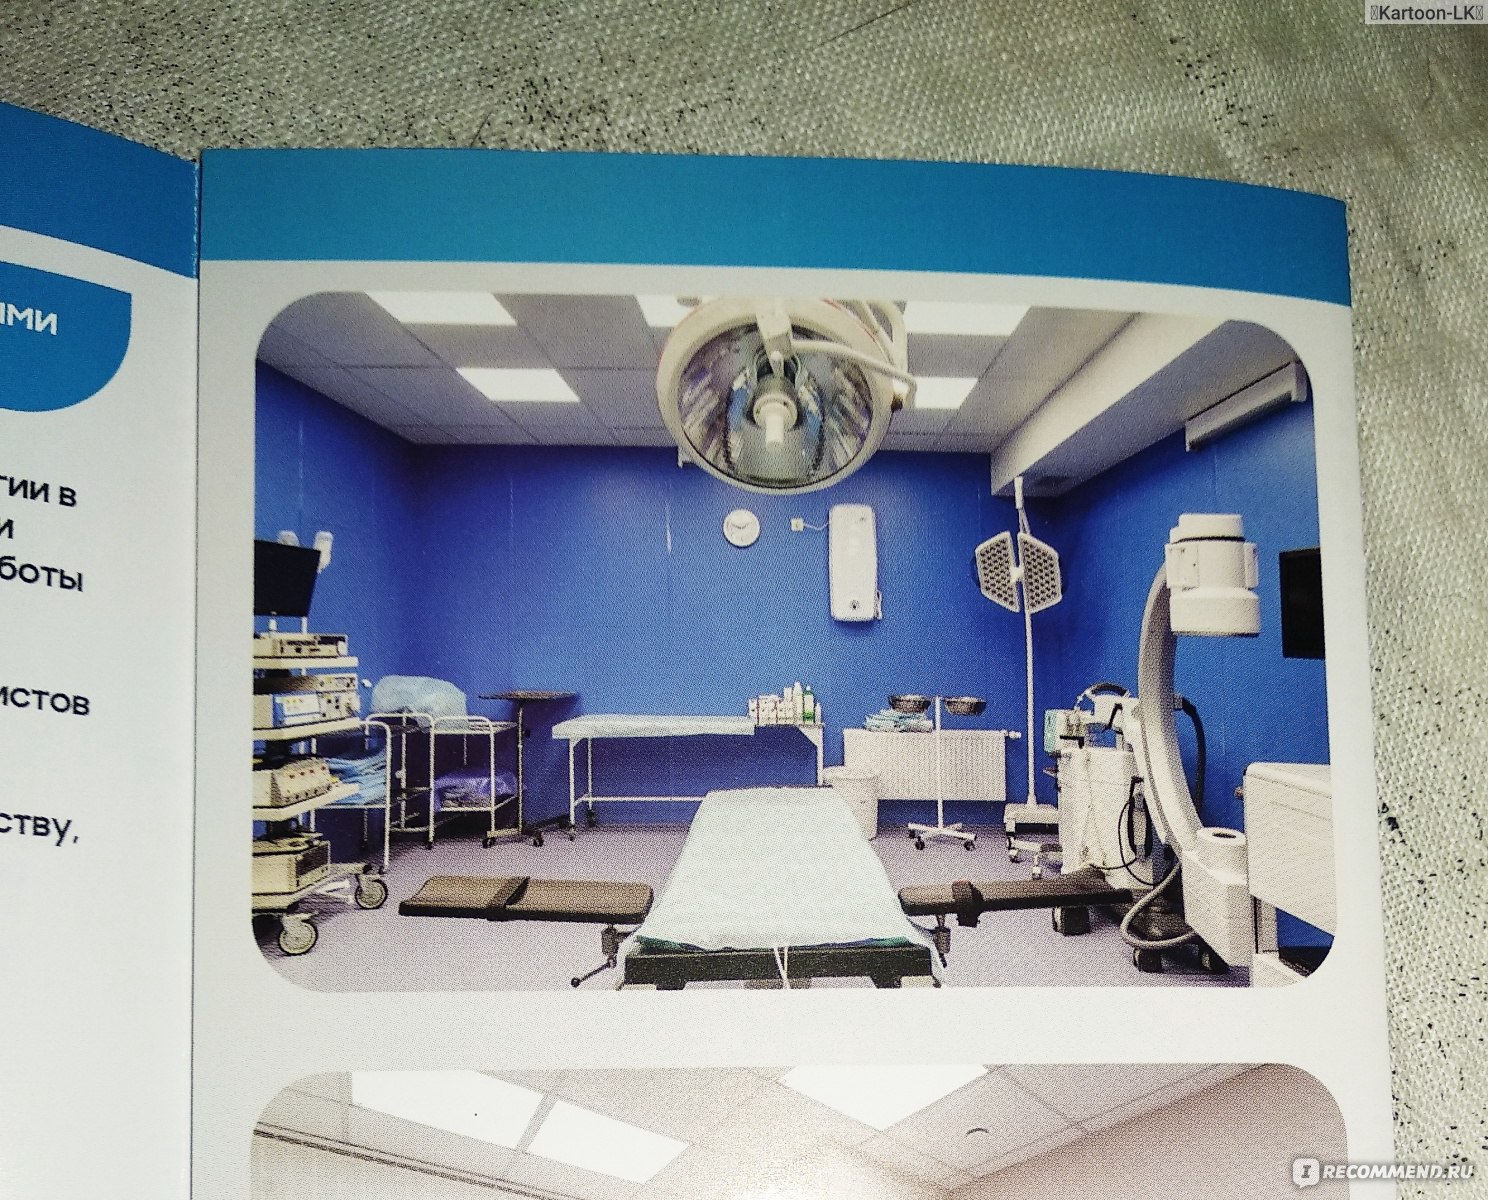 Фото операционной из брошурки клиники